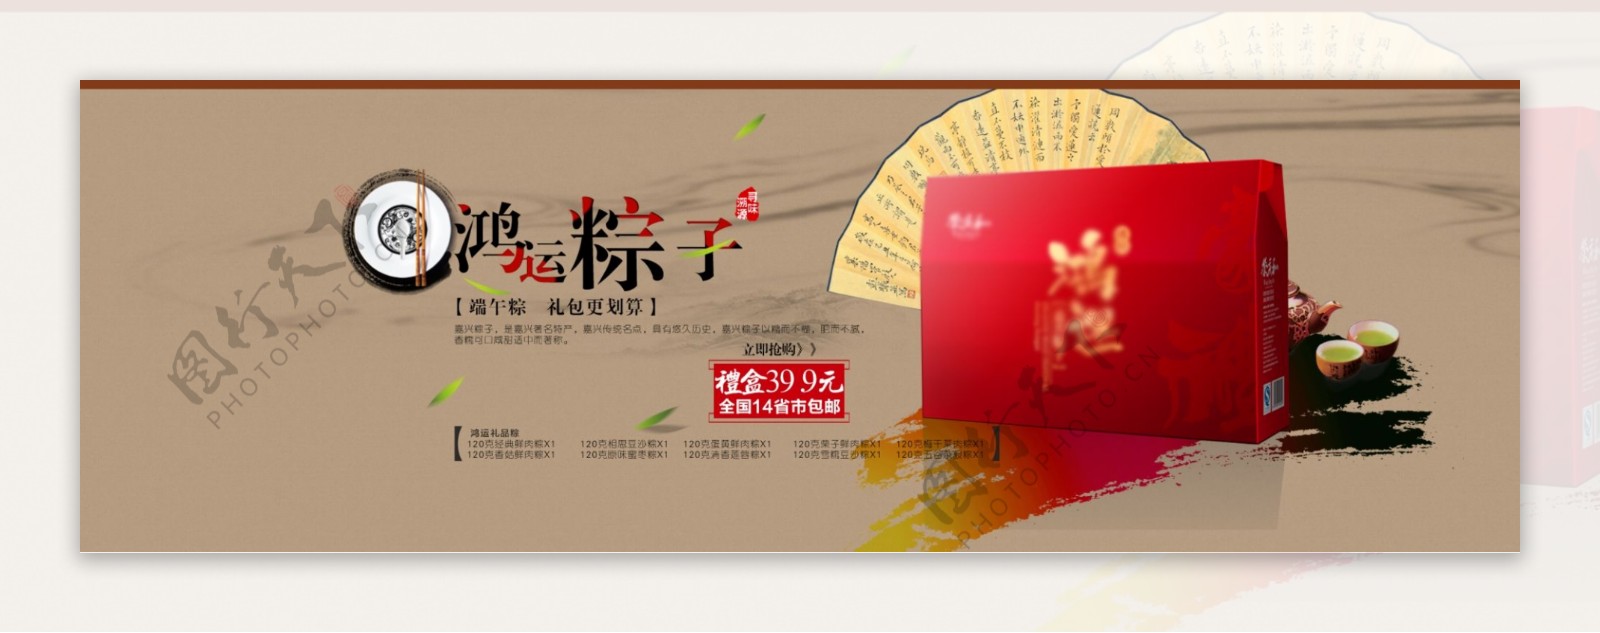 淘宝网店节庆热销产品活动宣海报图片